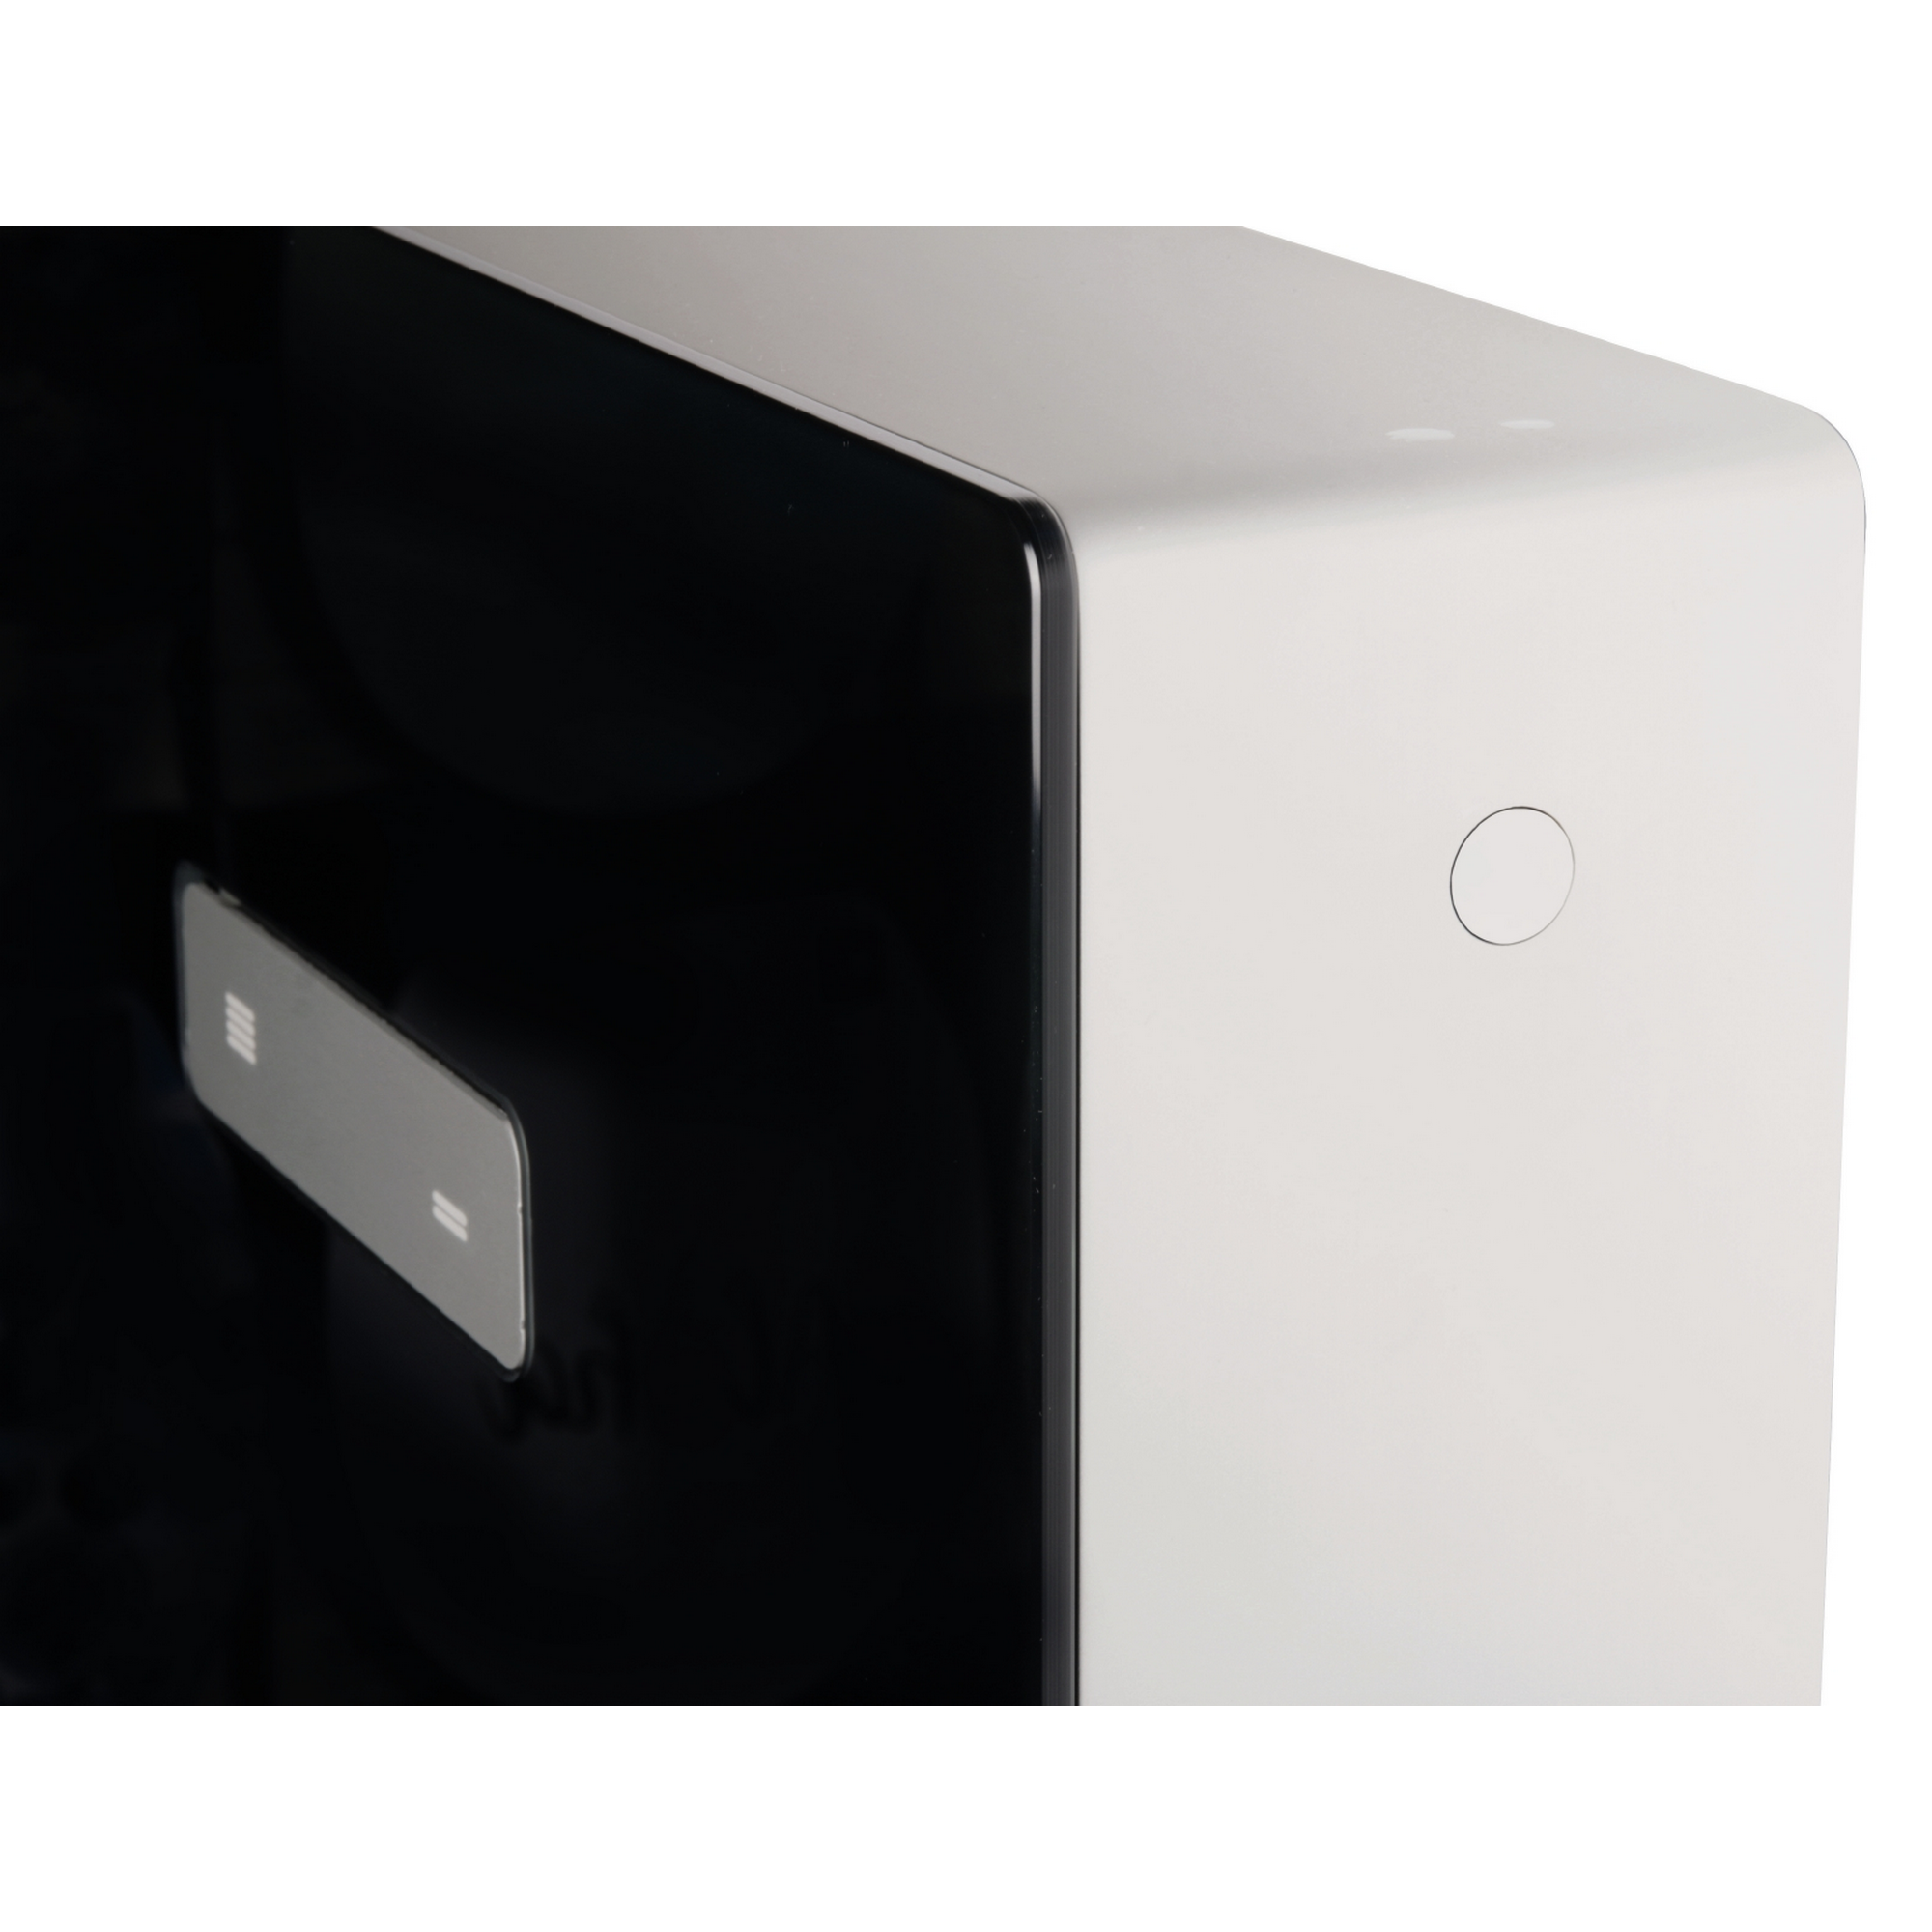 Sanitärmodul für Wand-WC schwarz hochglanz, mit Betätigungsplatte + product picture